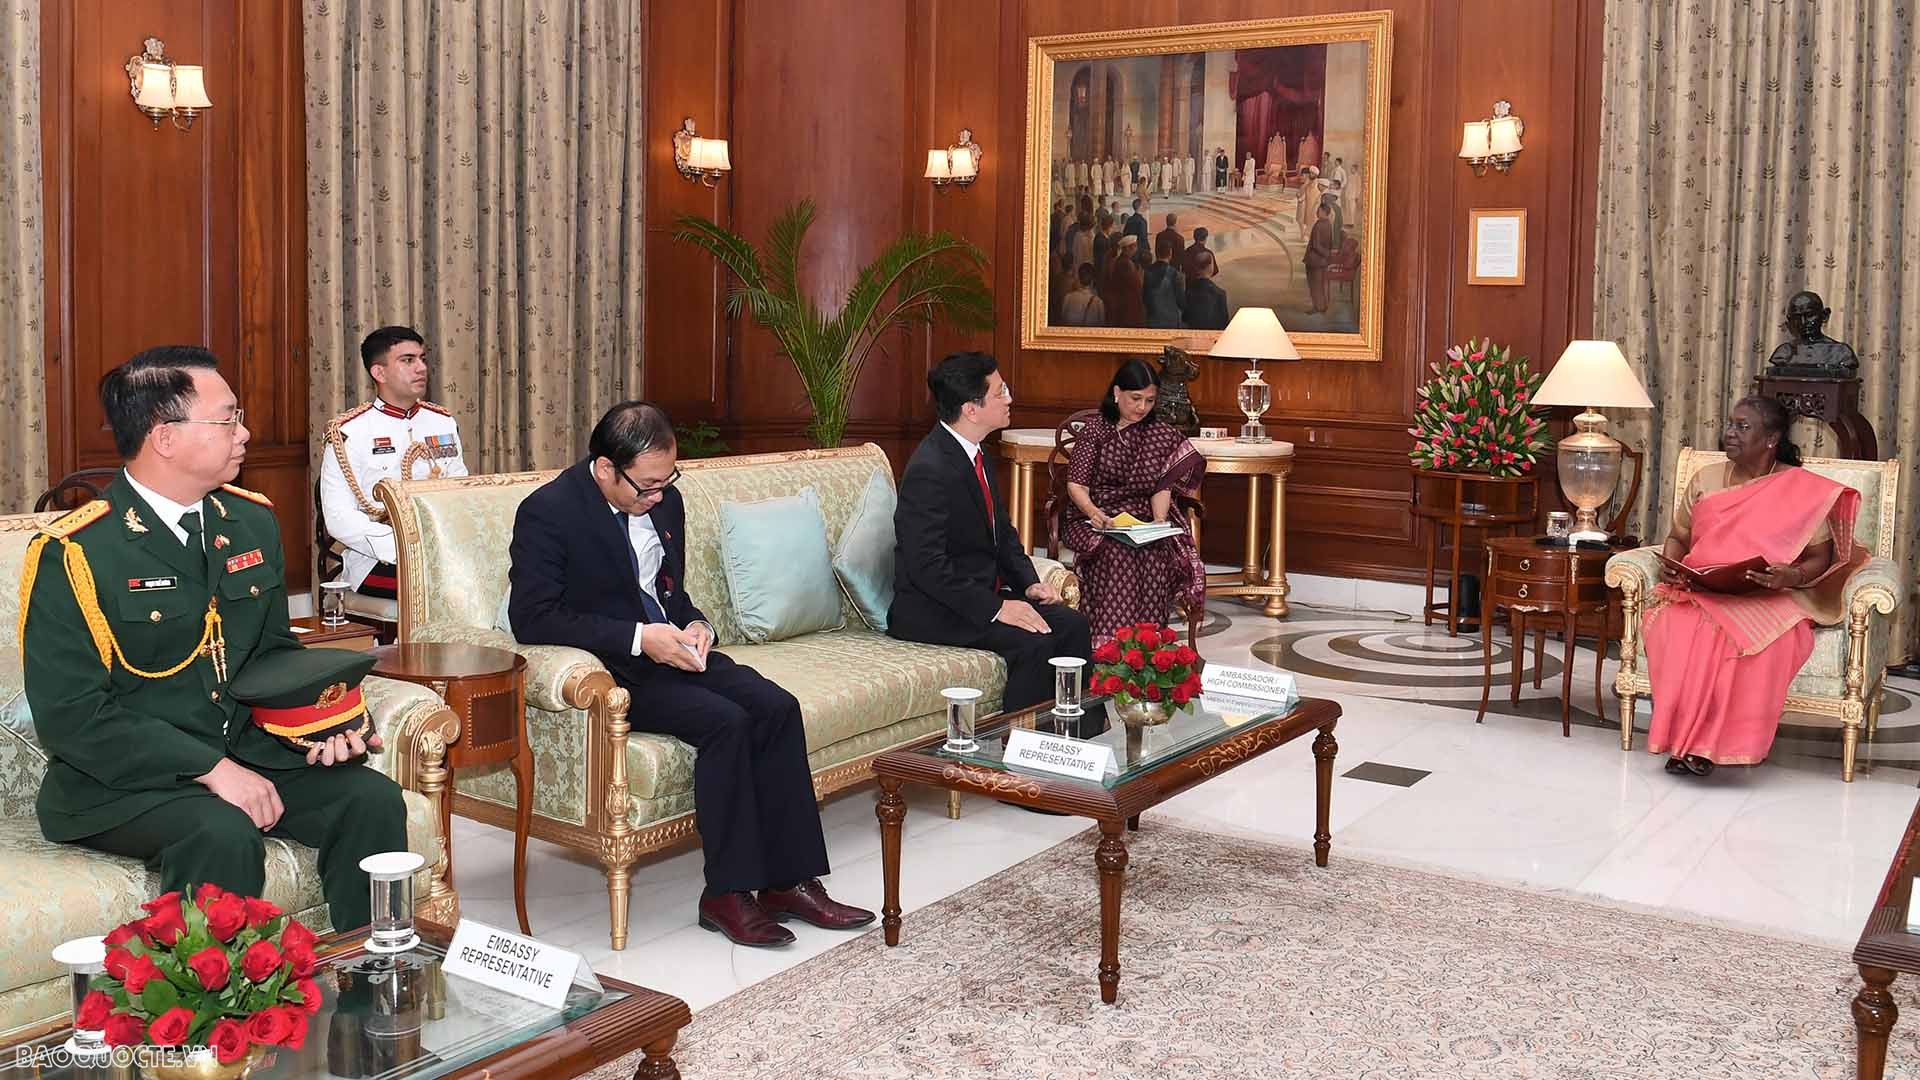 Đại sứ  Nguyễn Thanh Hải trình Thư ủy nhiệm lên Tổng thống Ấn Độ